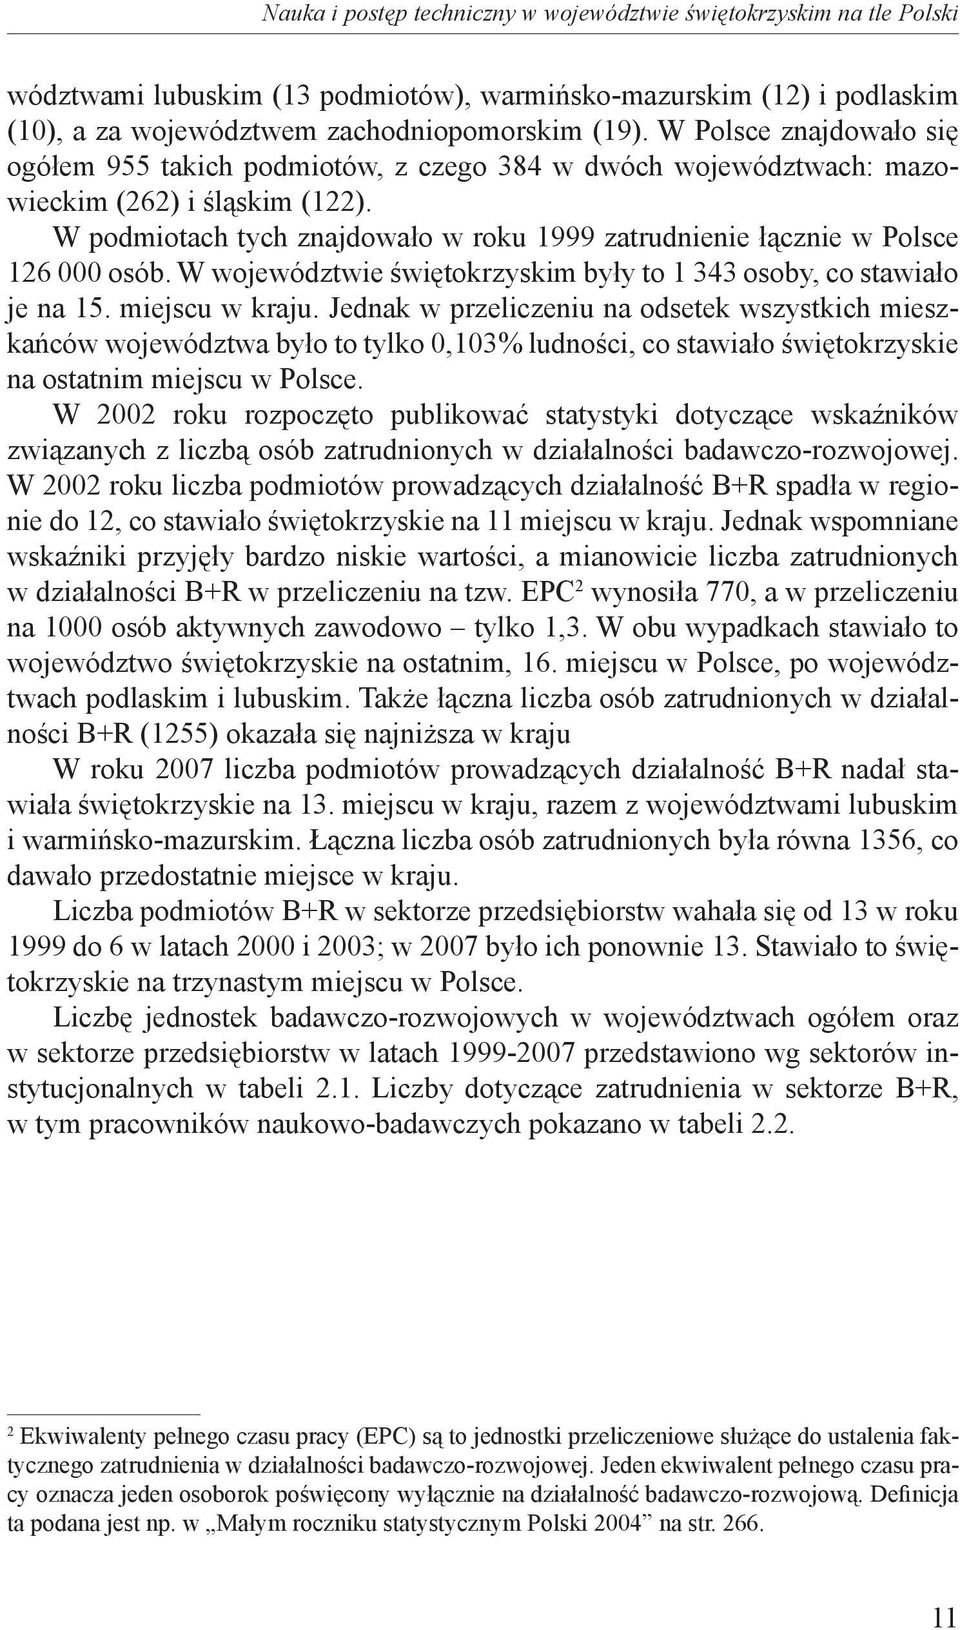 W podmiotach tych znajdowało w roku 1999 zatrudnienie łącznie w Polsce 126 000 osób. W województwie świętokrzyskim były to 1 343 osoby, co stawiało je na 15. miejscu w kraju.